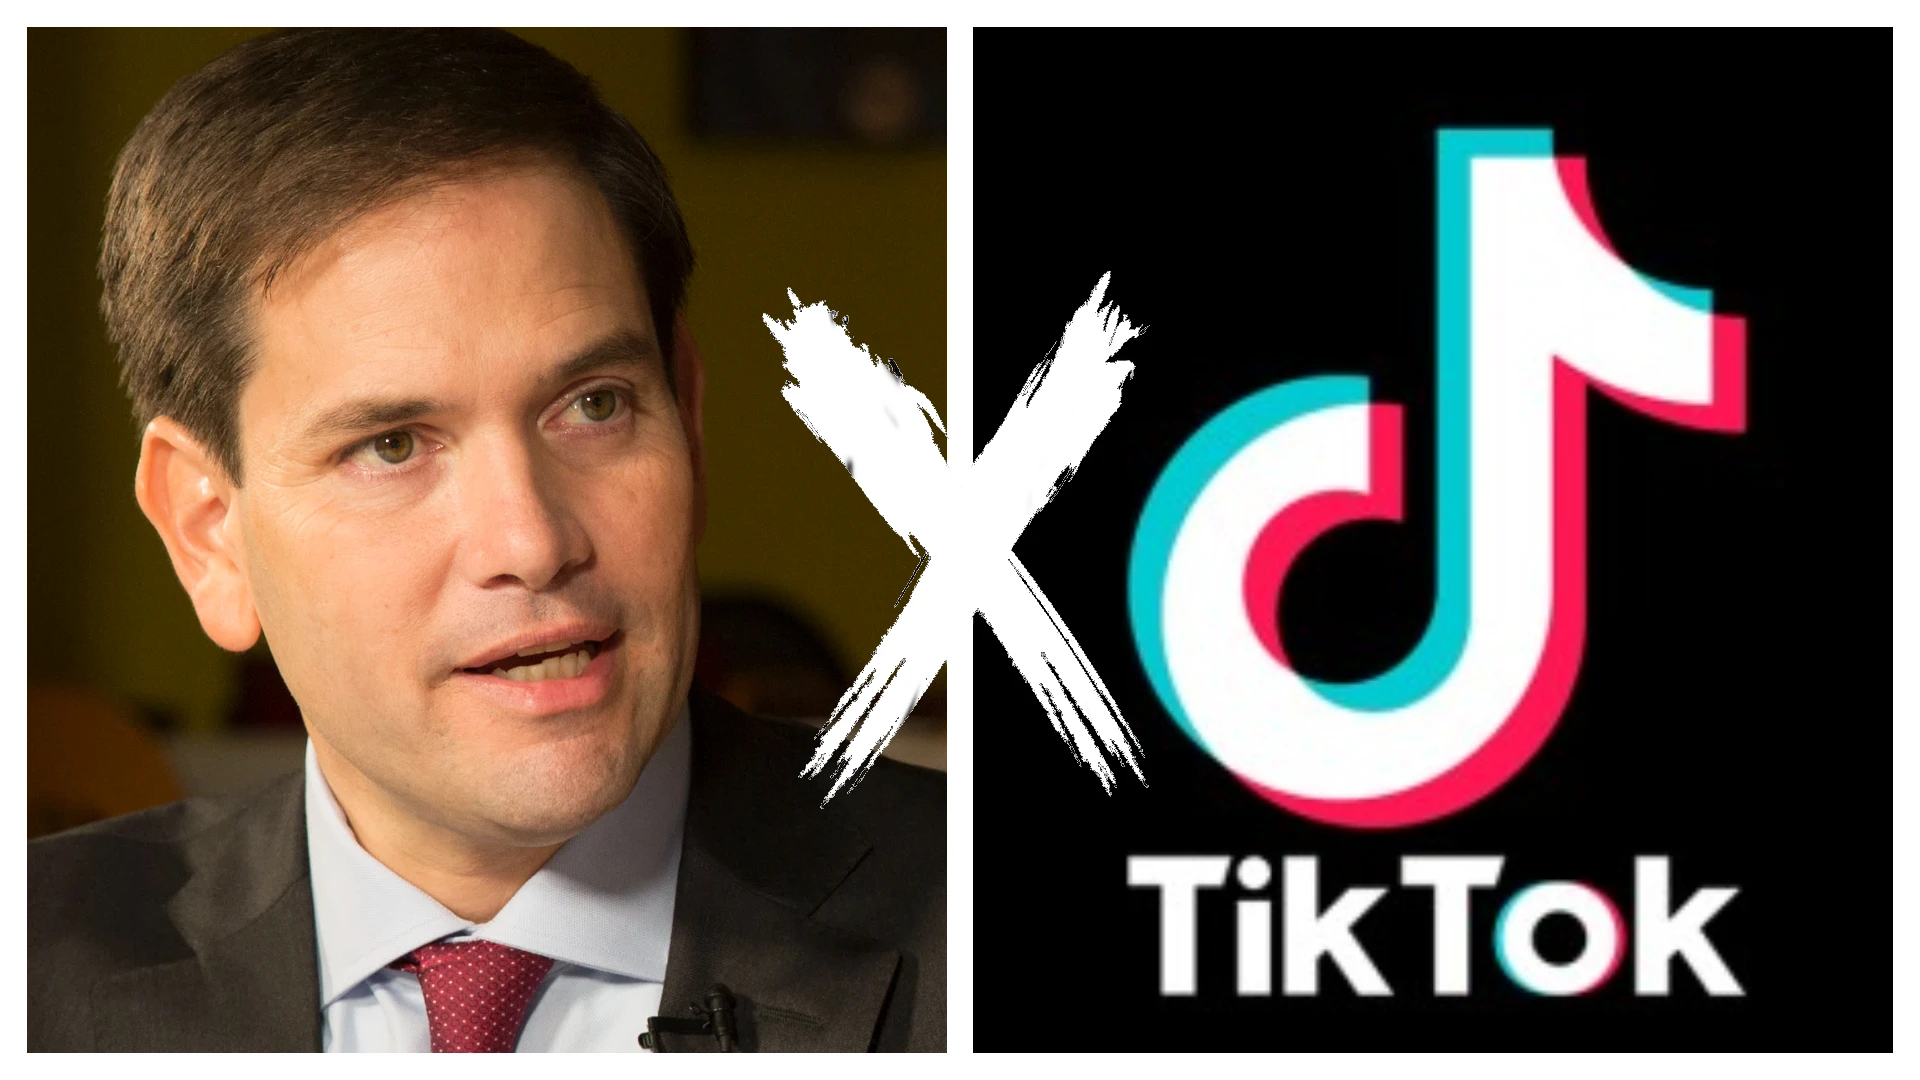 Colagem coloca em lados opostos o senador estadunidense Marco Rubio e o logotipo do TikTok